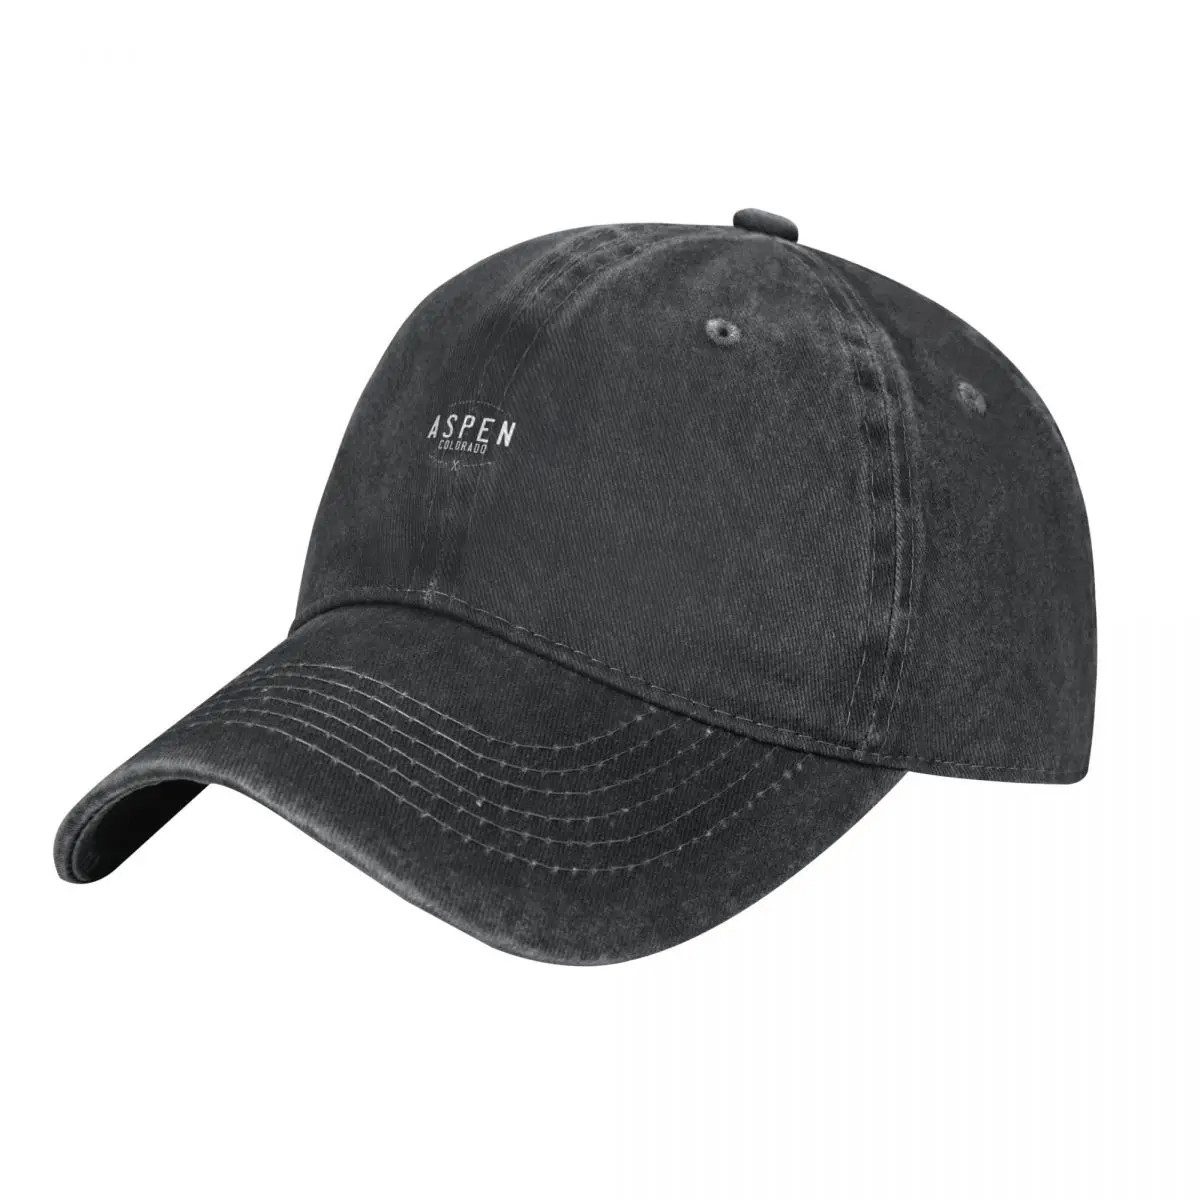 

Aspen графическая потертая винтажная Лыжная ковбойская шляпа в стиле Колорадо, шляпа для джентльмена, индивидуальная шапка из пенопласта, детская дизайнерская мужская женская шляпа